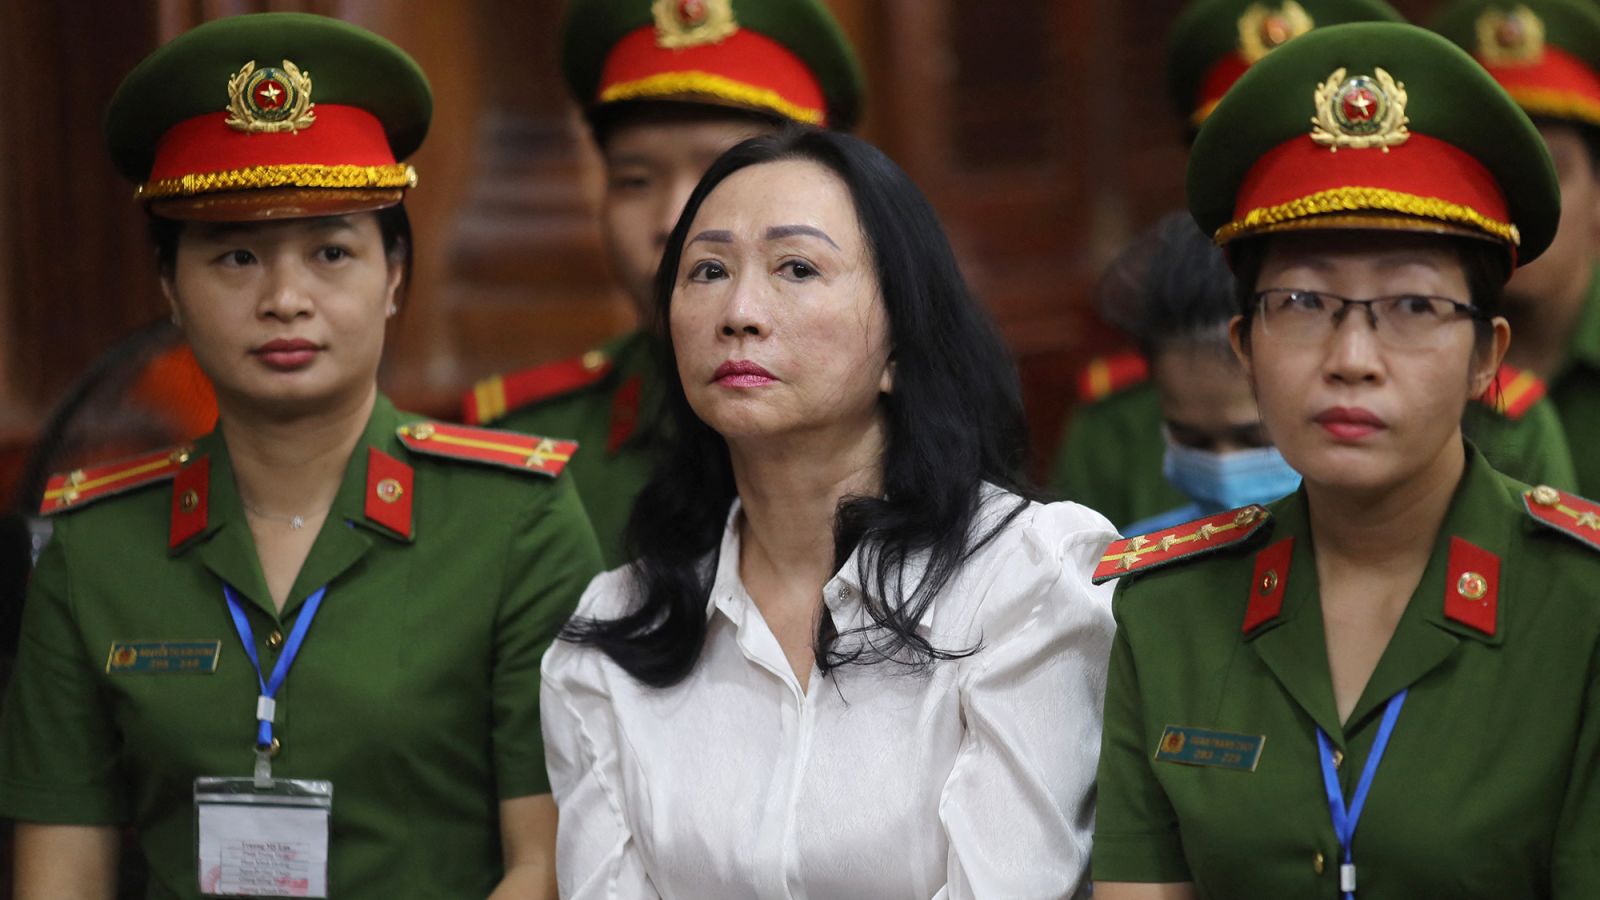 La condena a muerte de una magnate en un caso de fraude de ...0
millones pone de relieve la crisis de corrupción en Vietnam